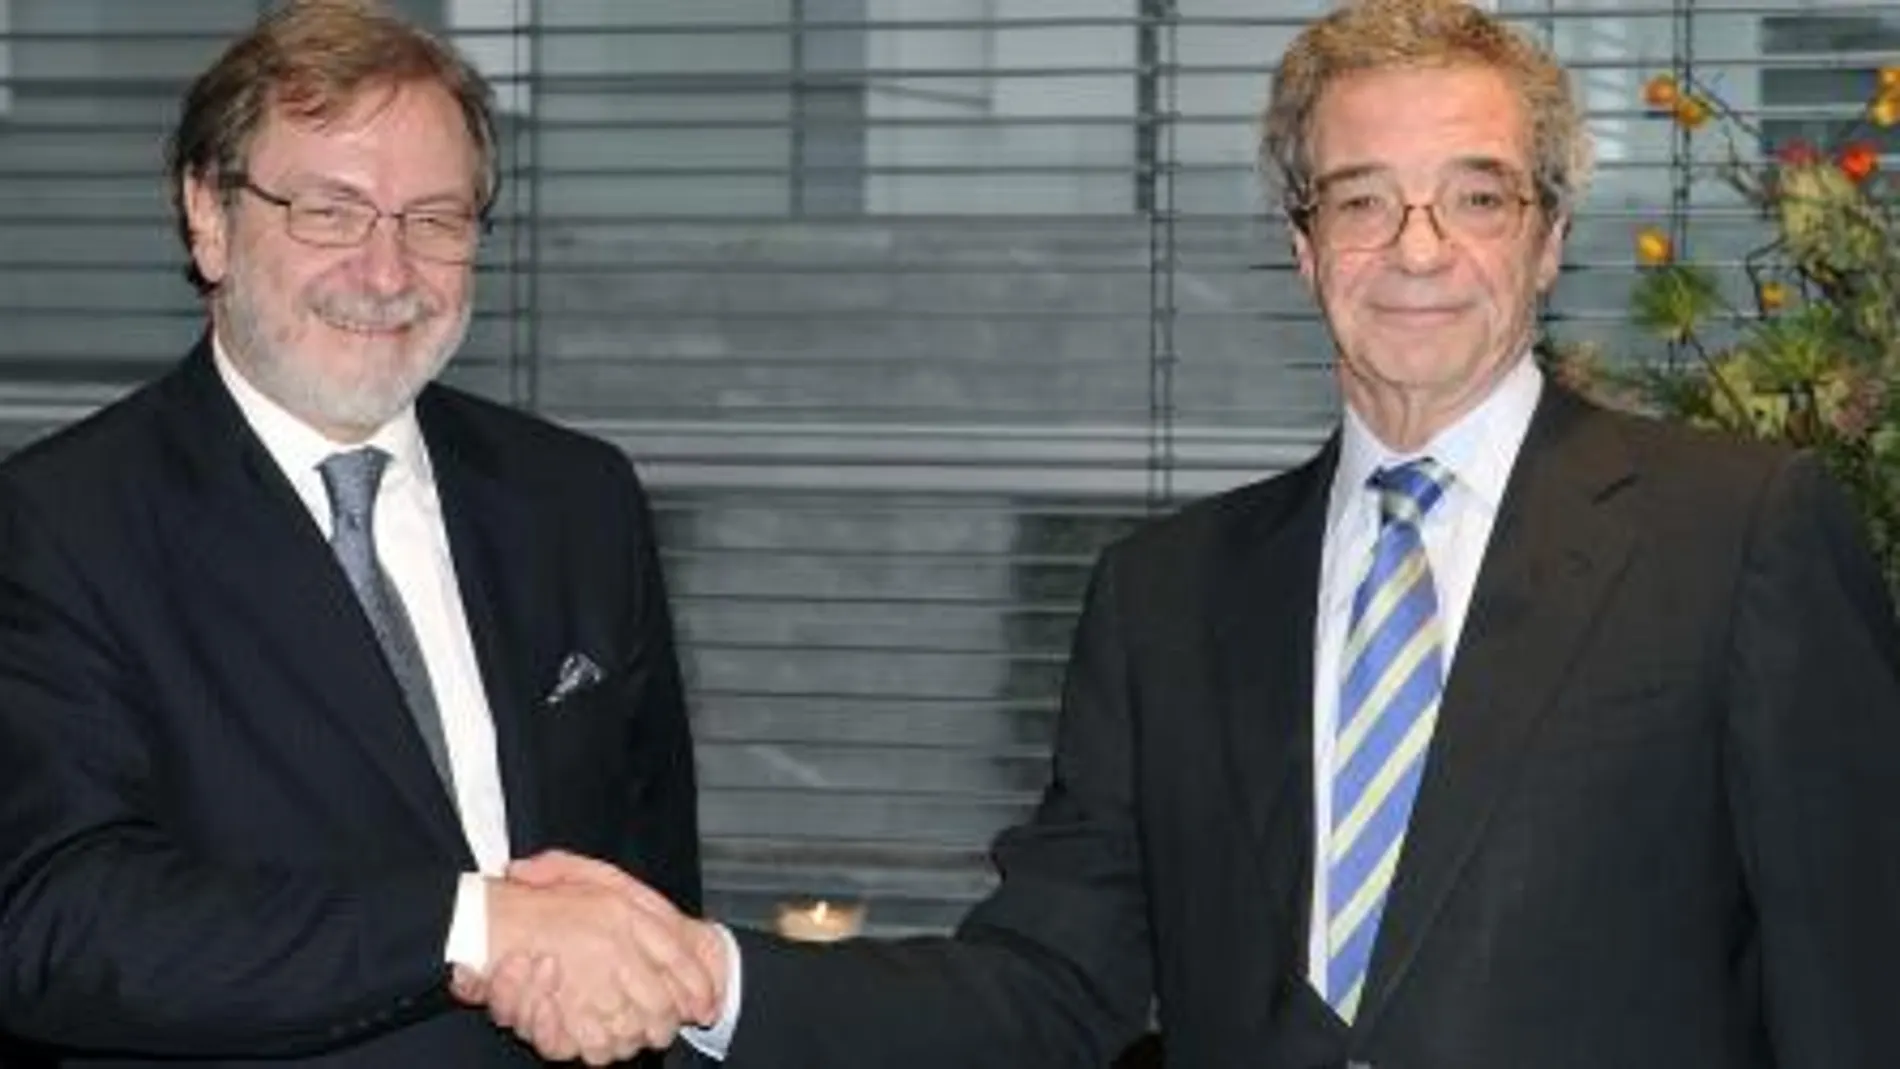 César Alierta estrecha la mano al presidente de PRISA, Juan Luis Cebrián, tras la compra por Telefónica del 21% de Digital+, en 2009.